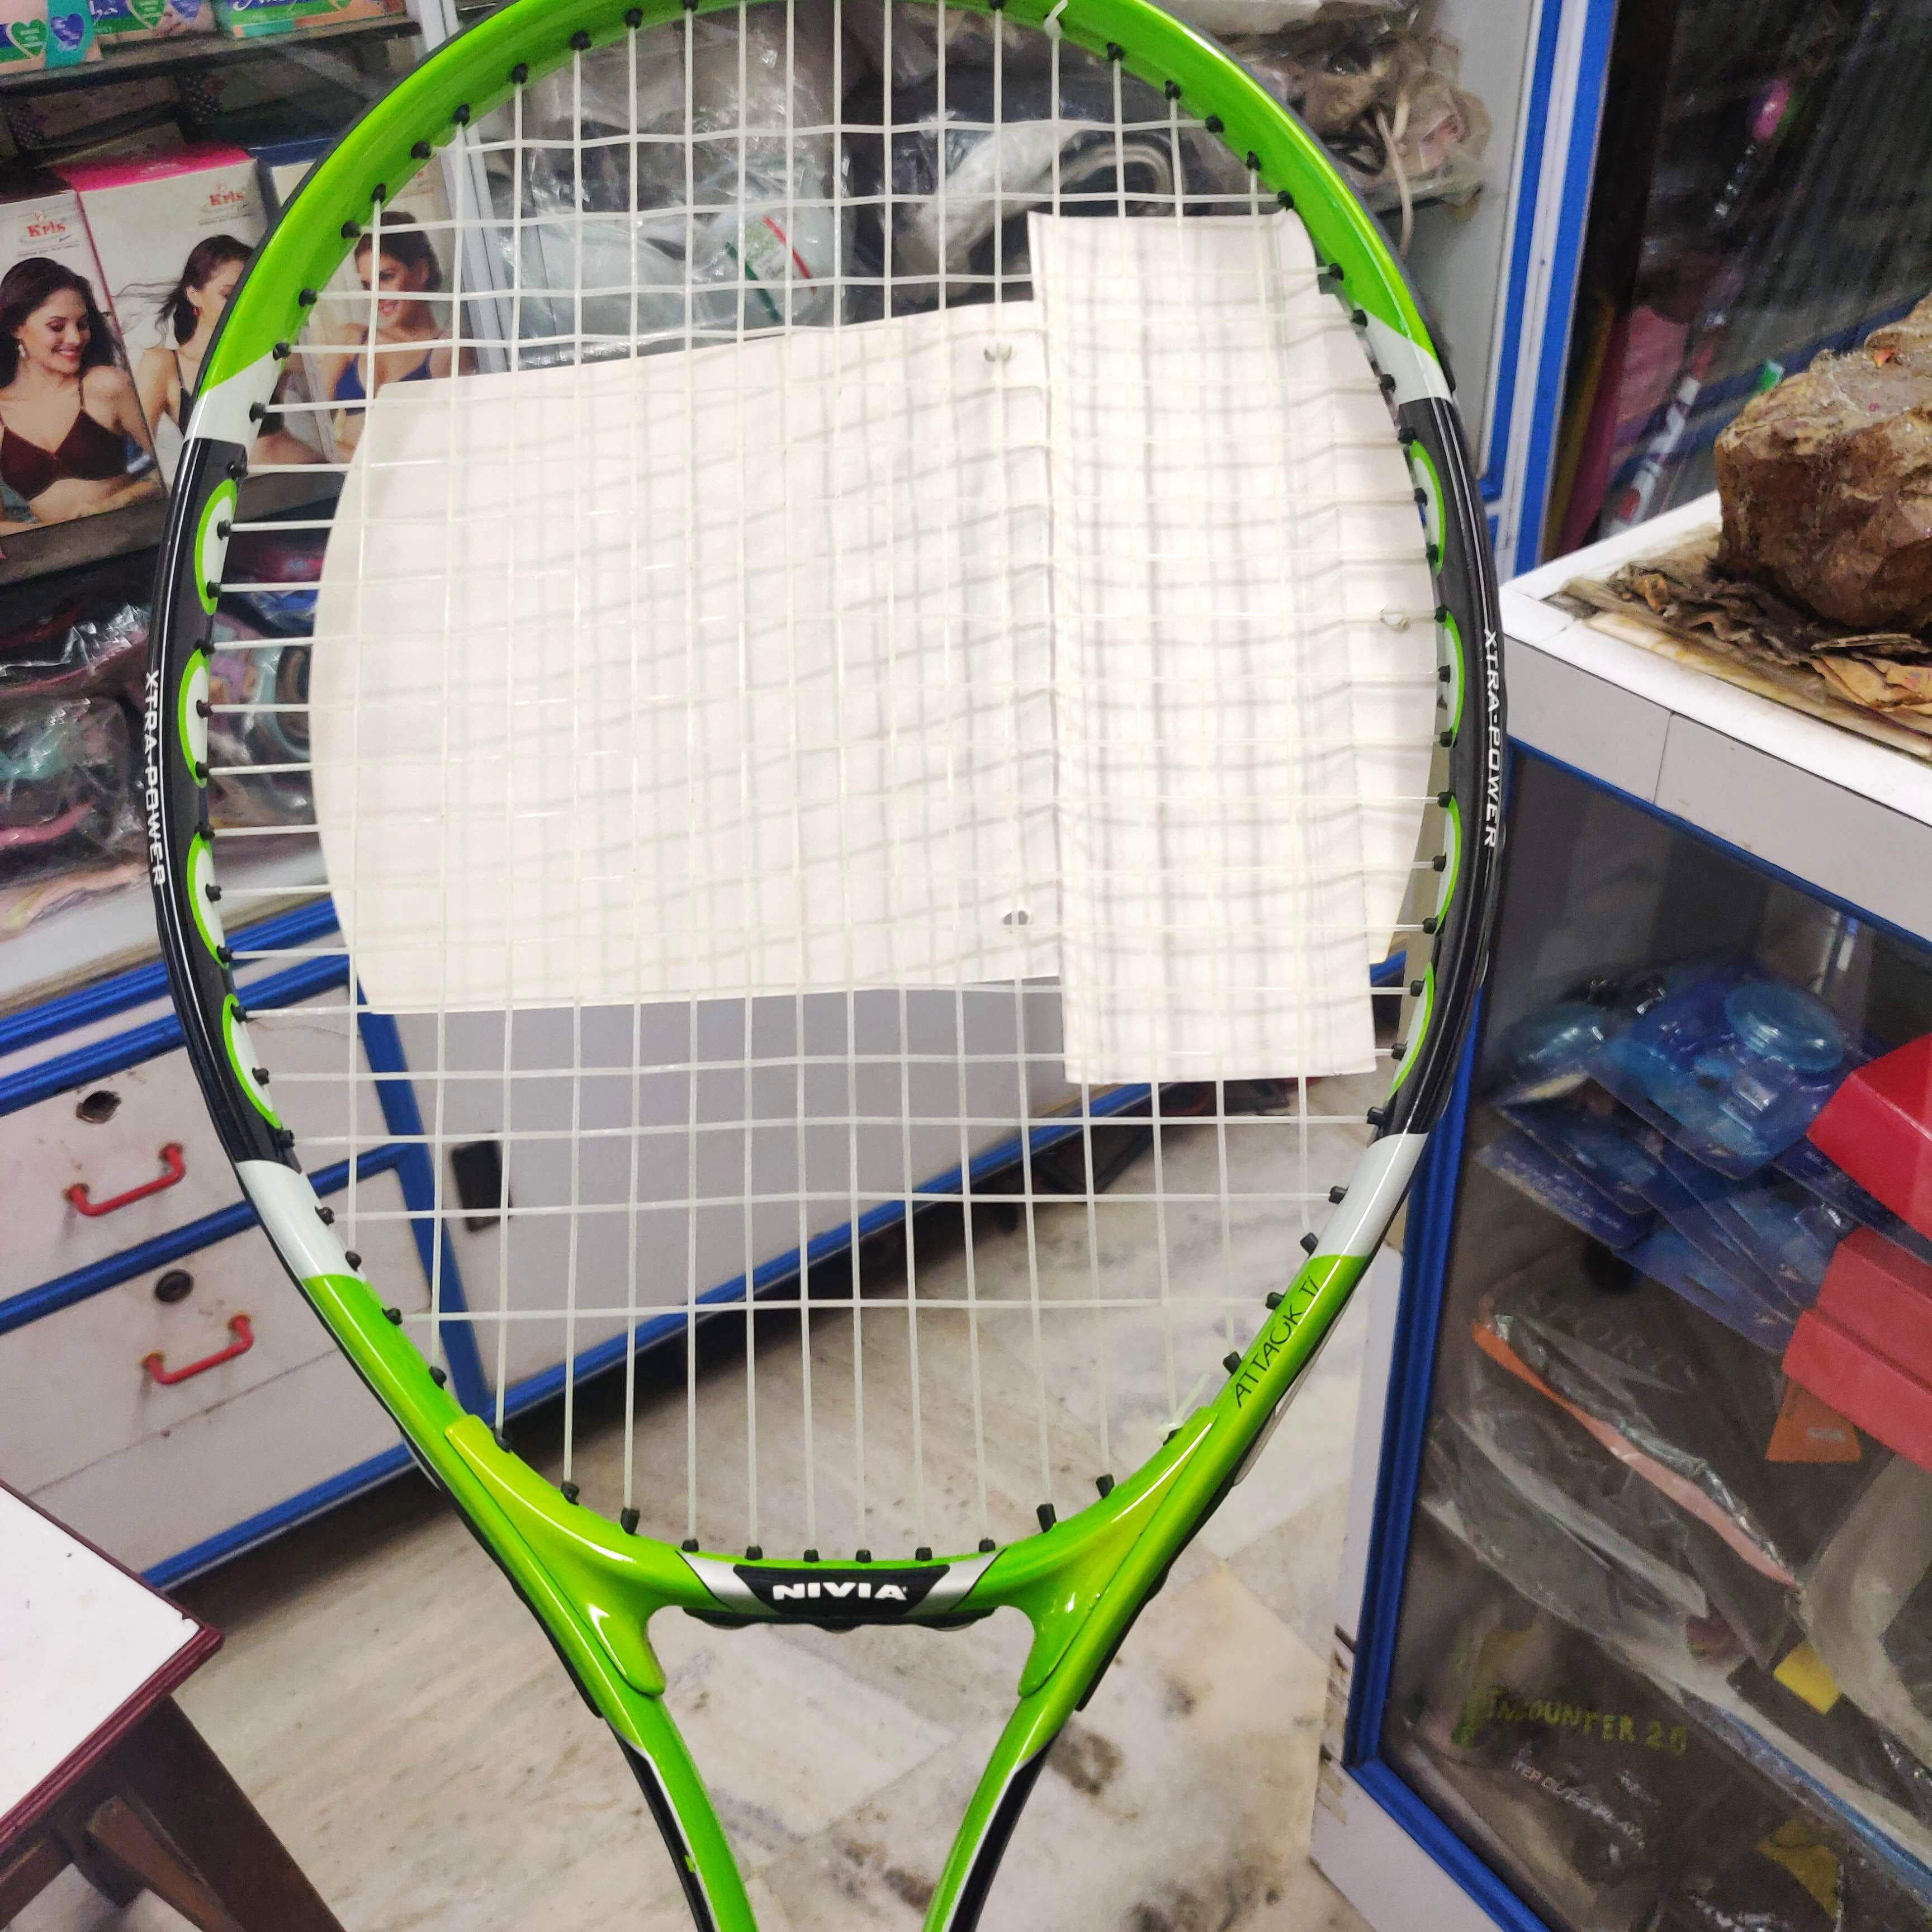 Racket,Tennis,Racquet sport,Rackets,Play,Sports equipment,Strings,Ball game,Tennis Equipment